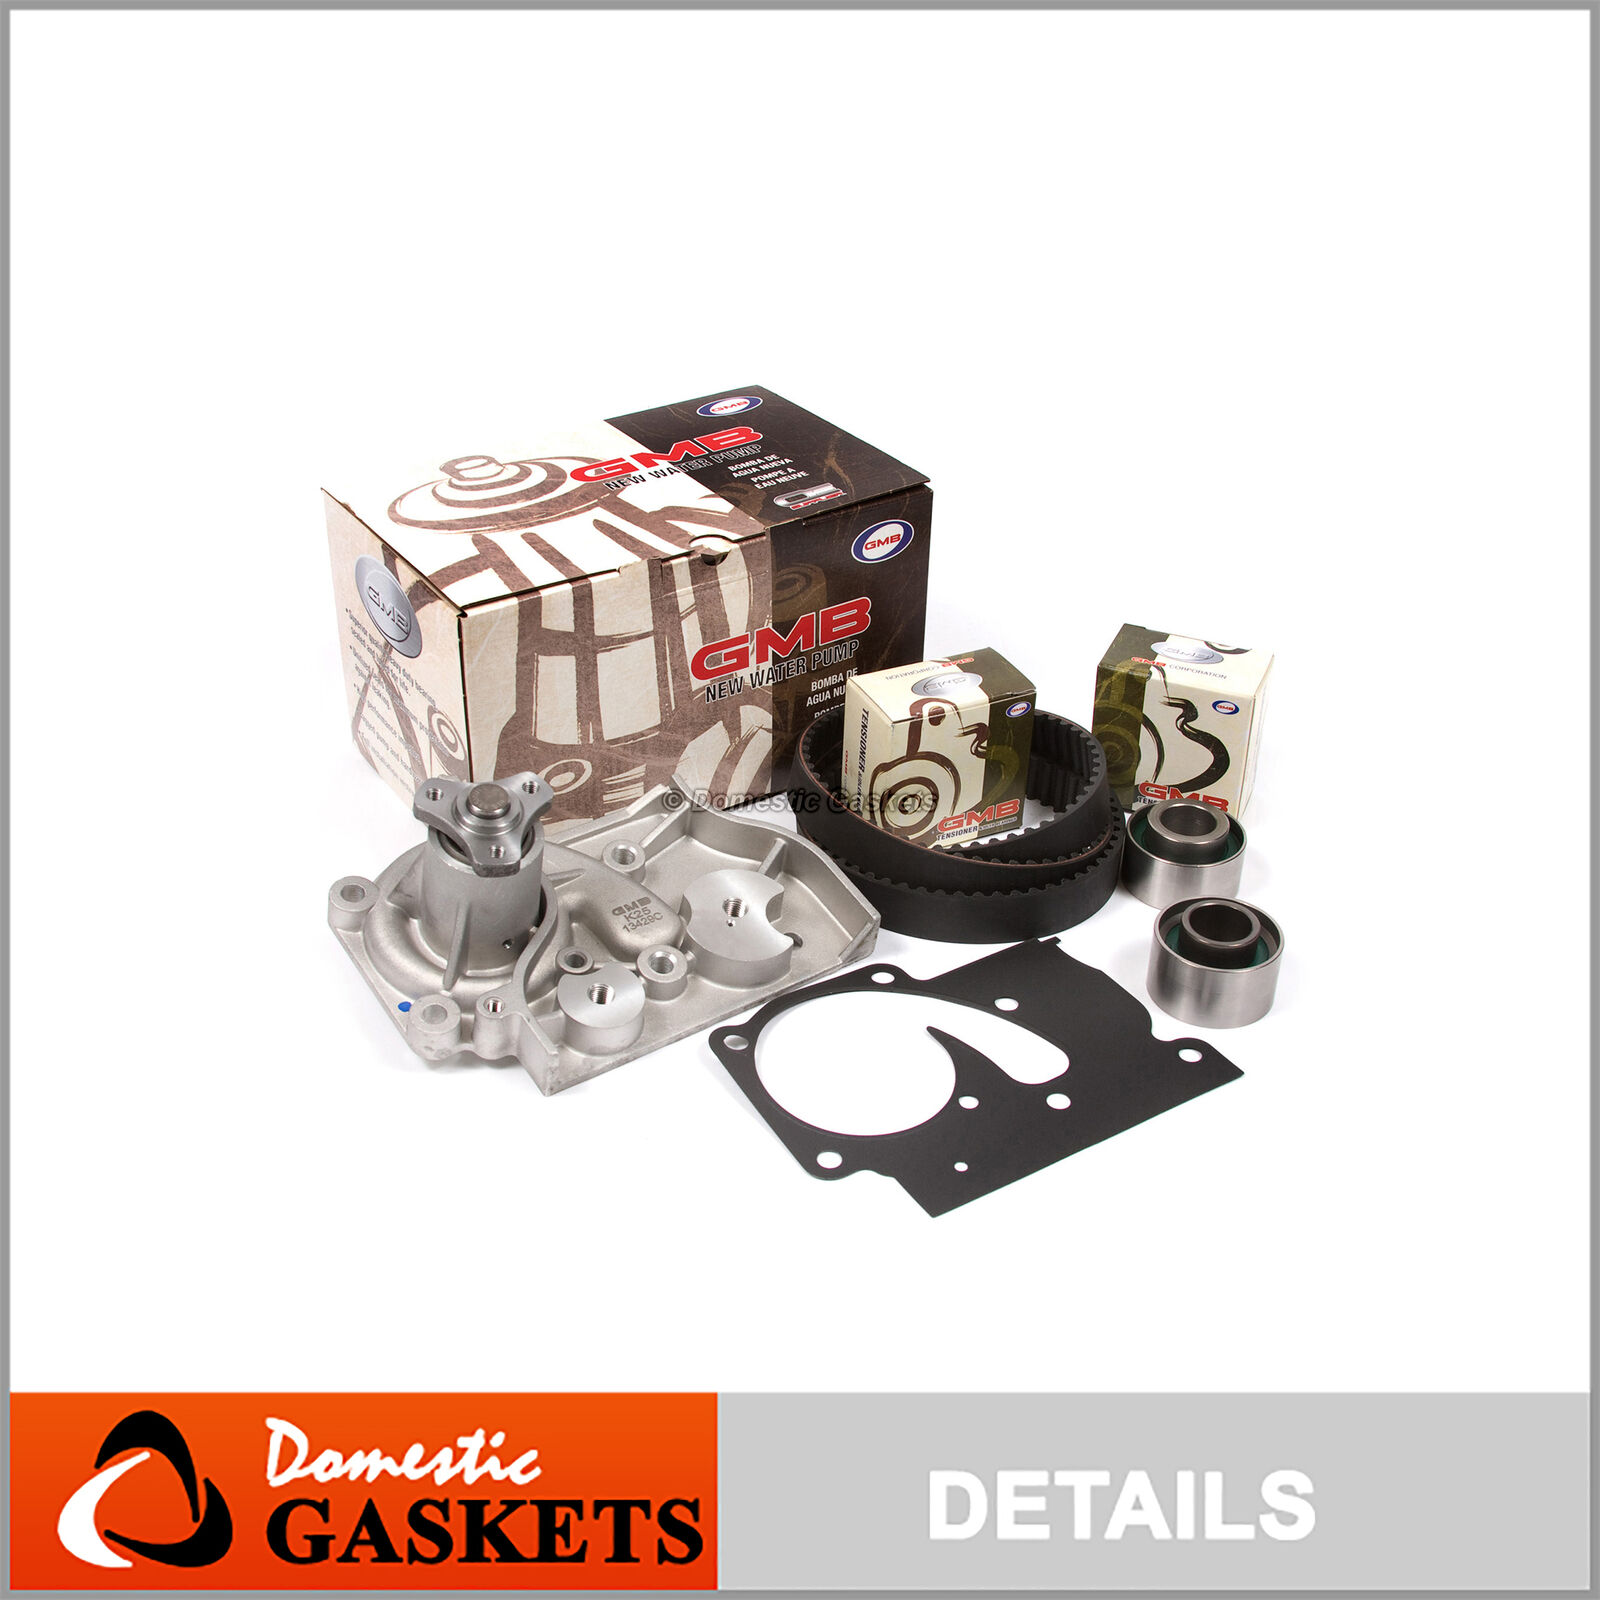 Timing Belt GMB Water Pump Kit Fit 98-04 Kia Sephia Spectra 1.8L DOHC FB